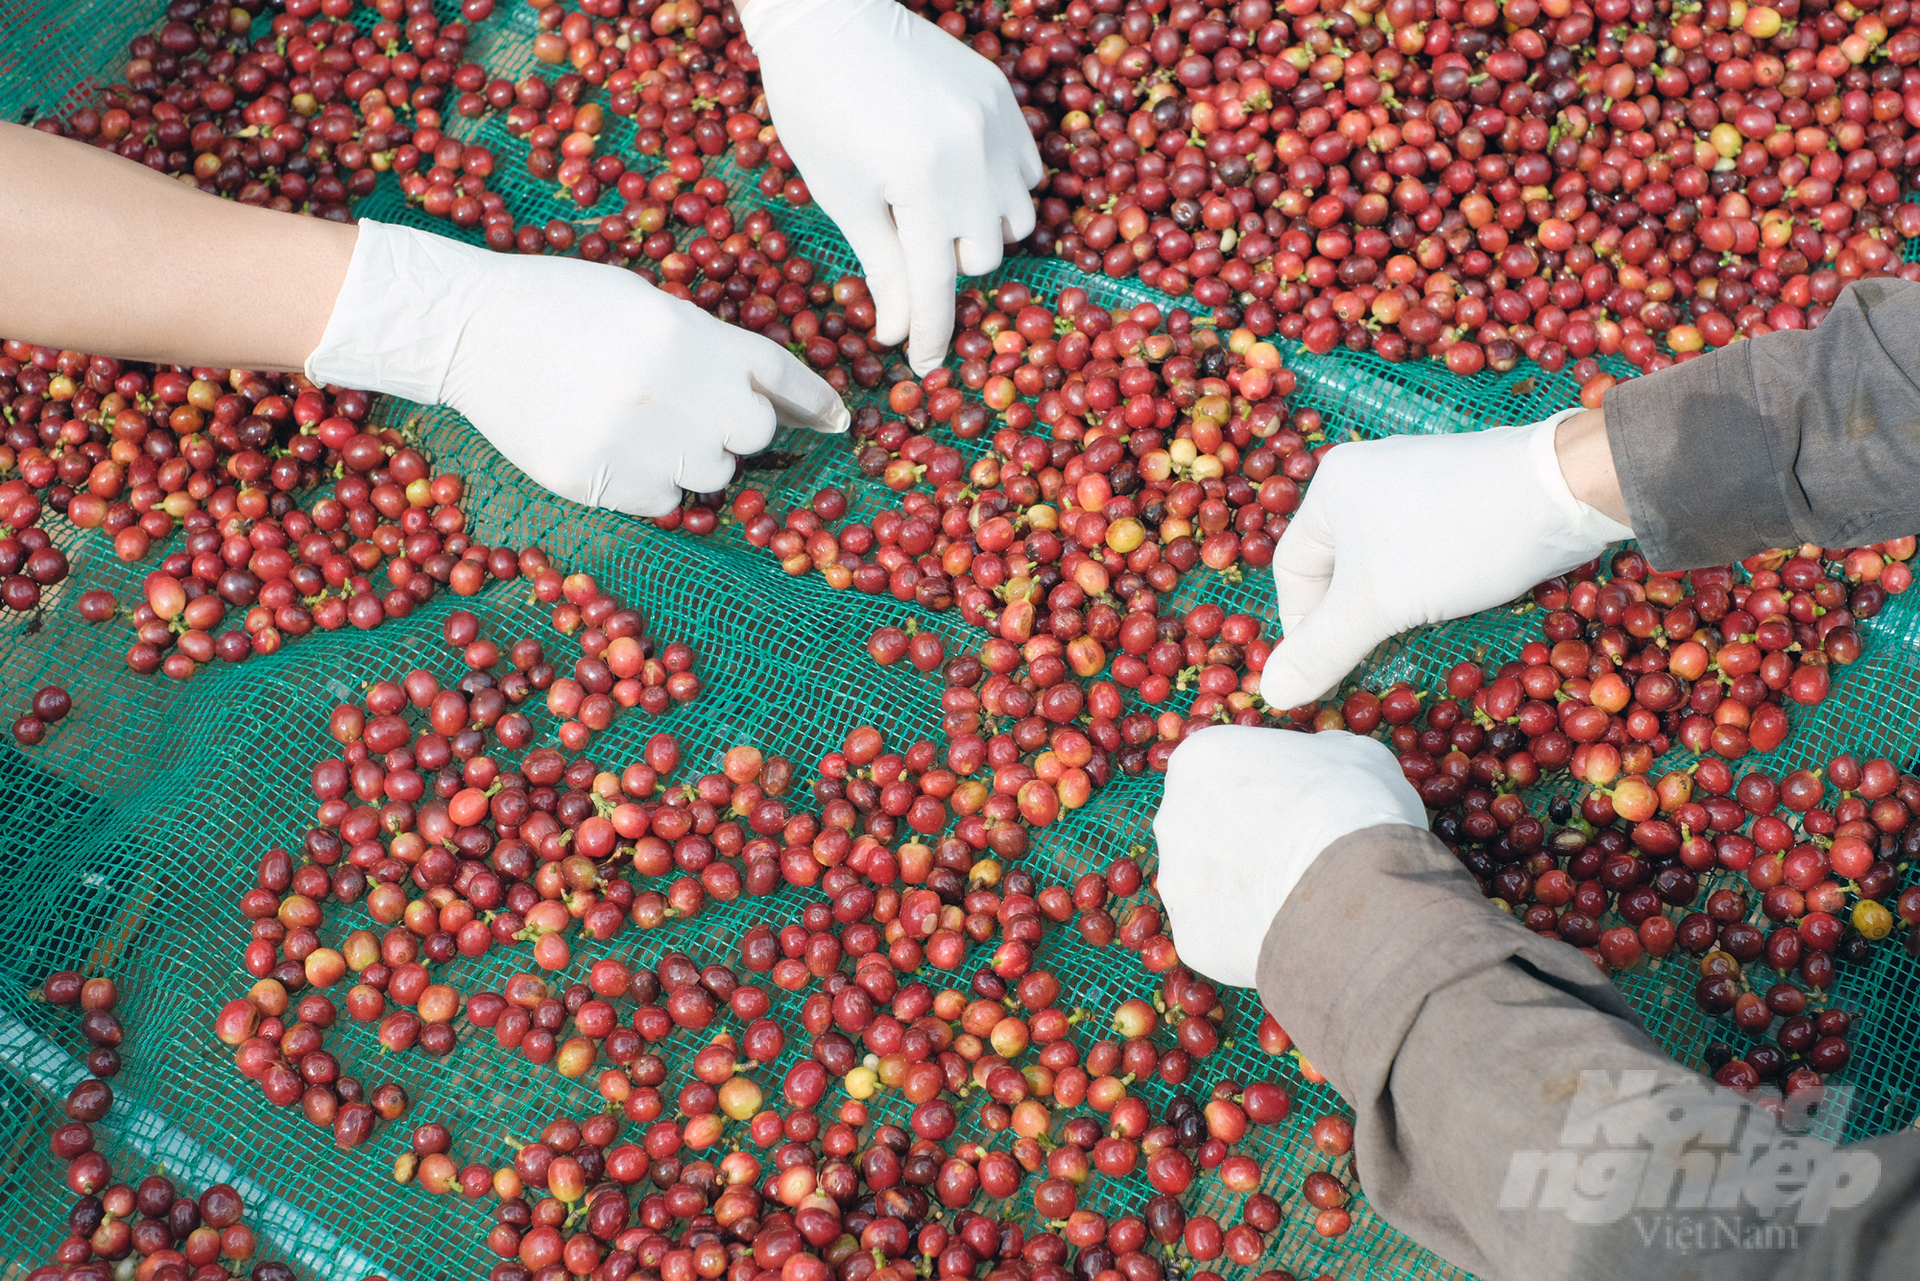 Các sản phẩm cà phê Arabica Khe Sanh hiện đã có mặt ở những thị trường khó tính trên thế giới. Ảnh: Võ Dũng.